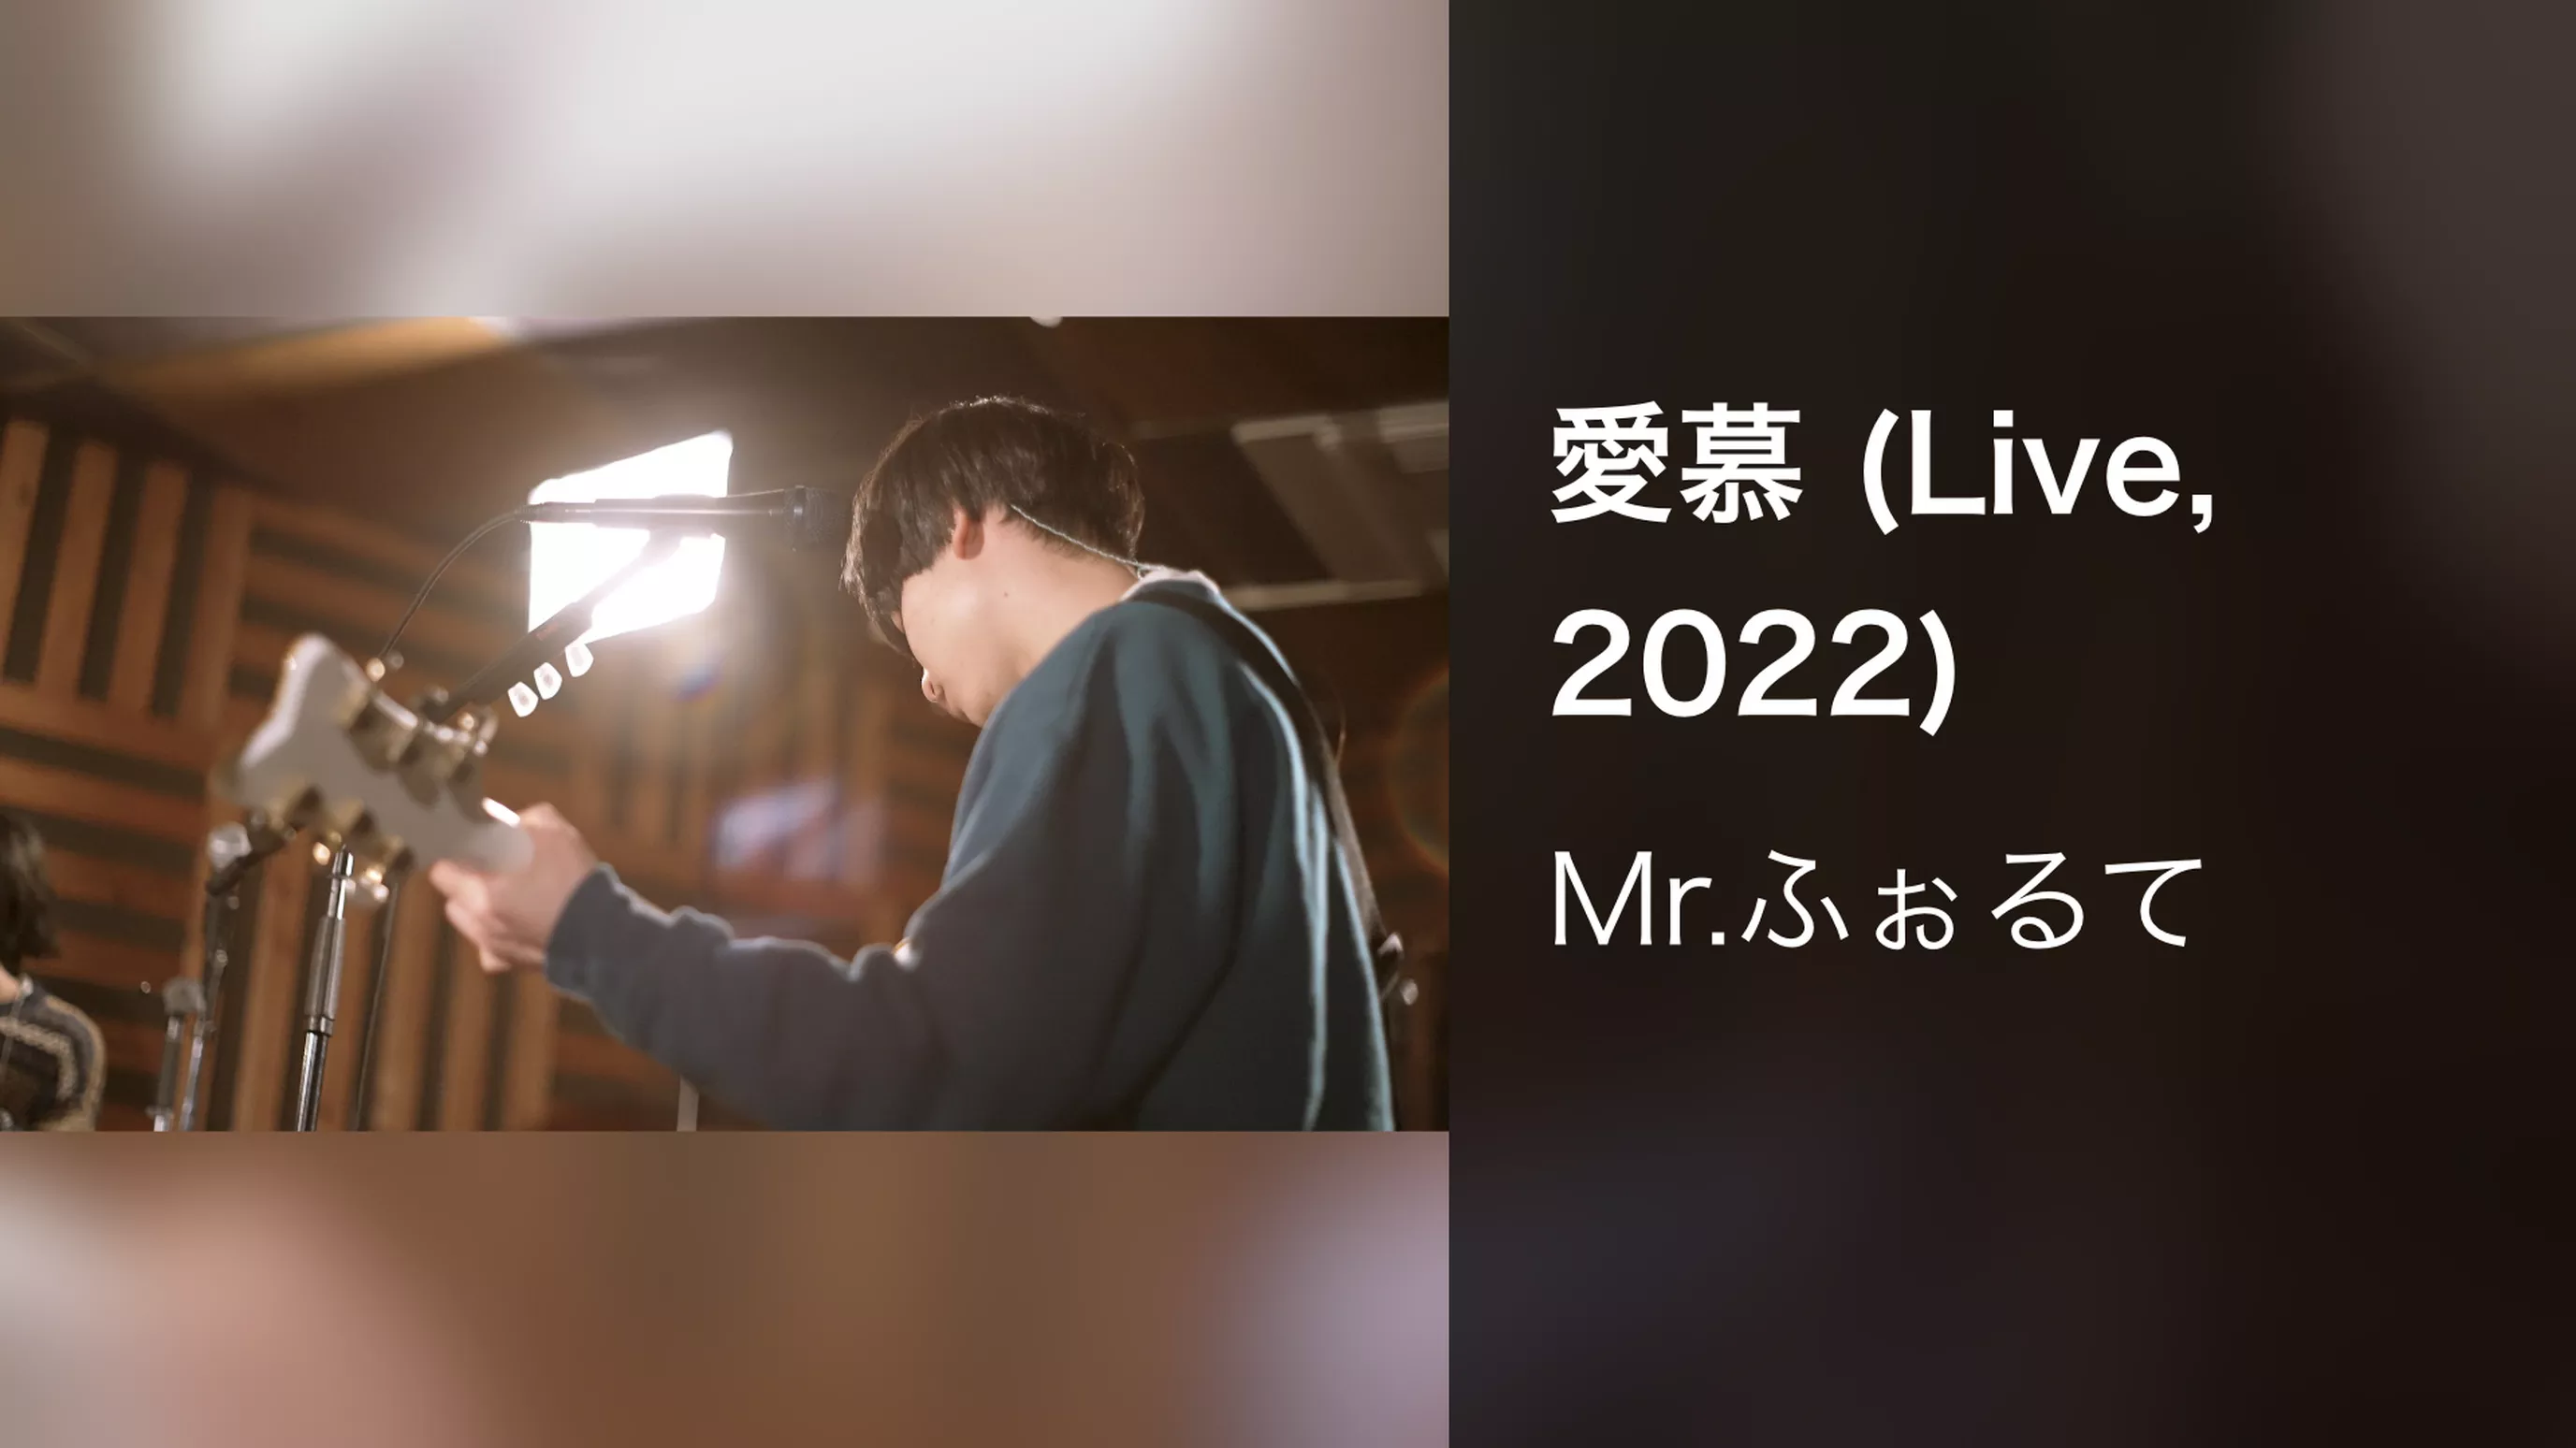 愛慕 (Live, 2022)